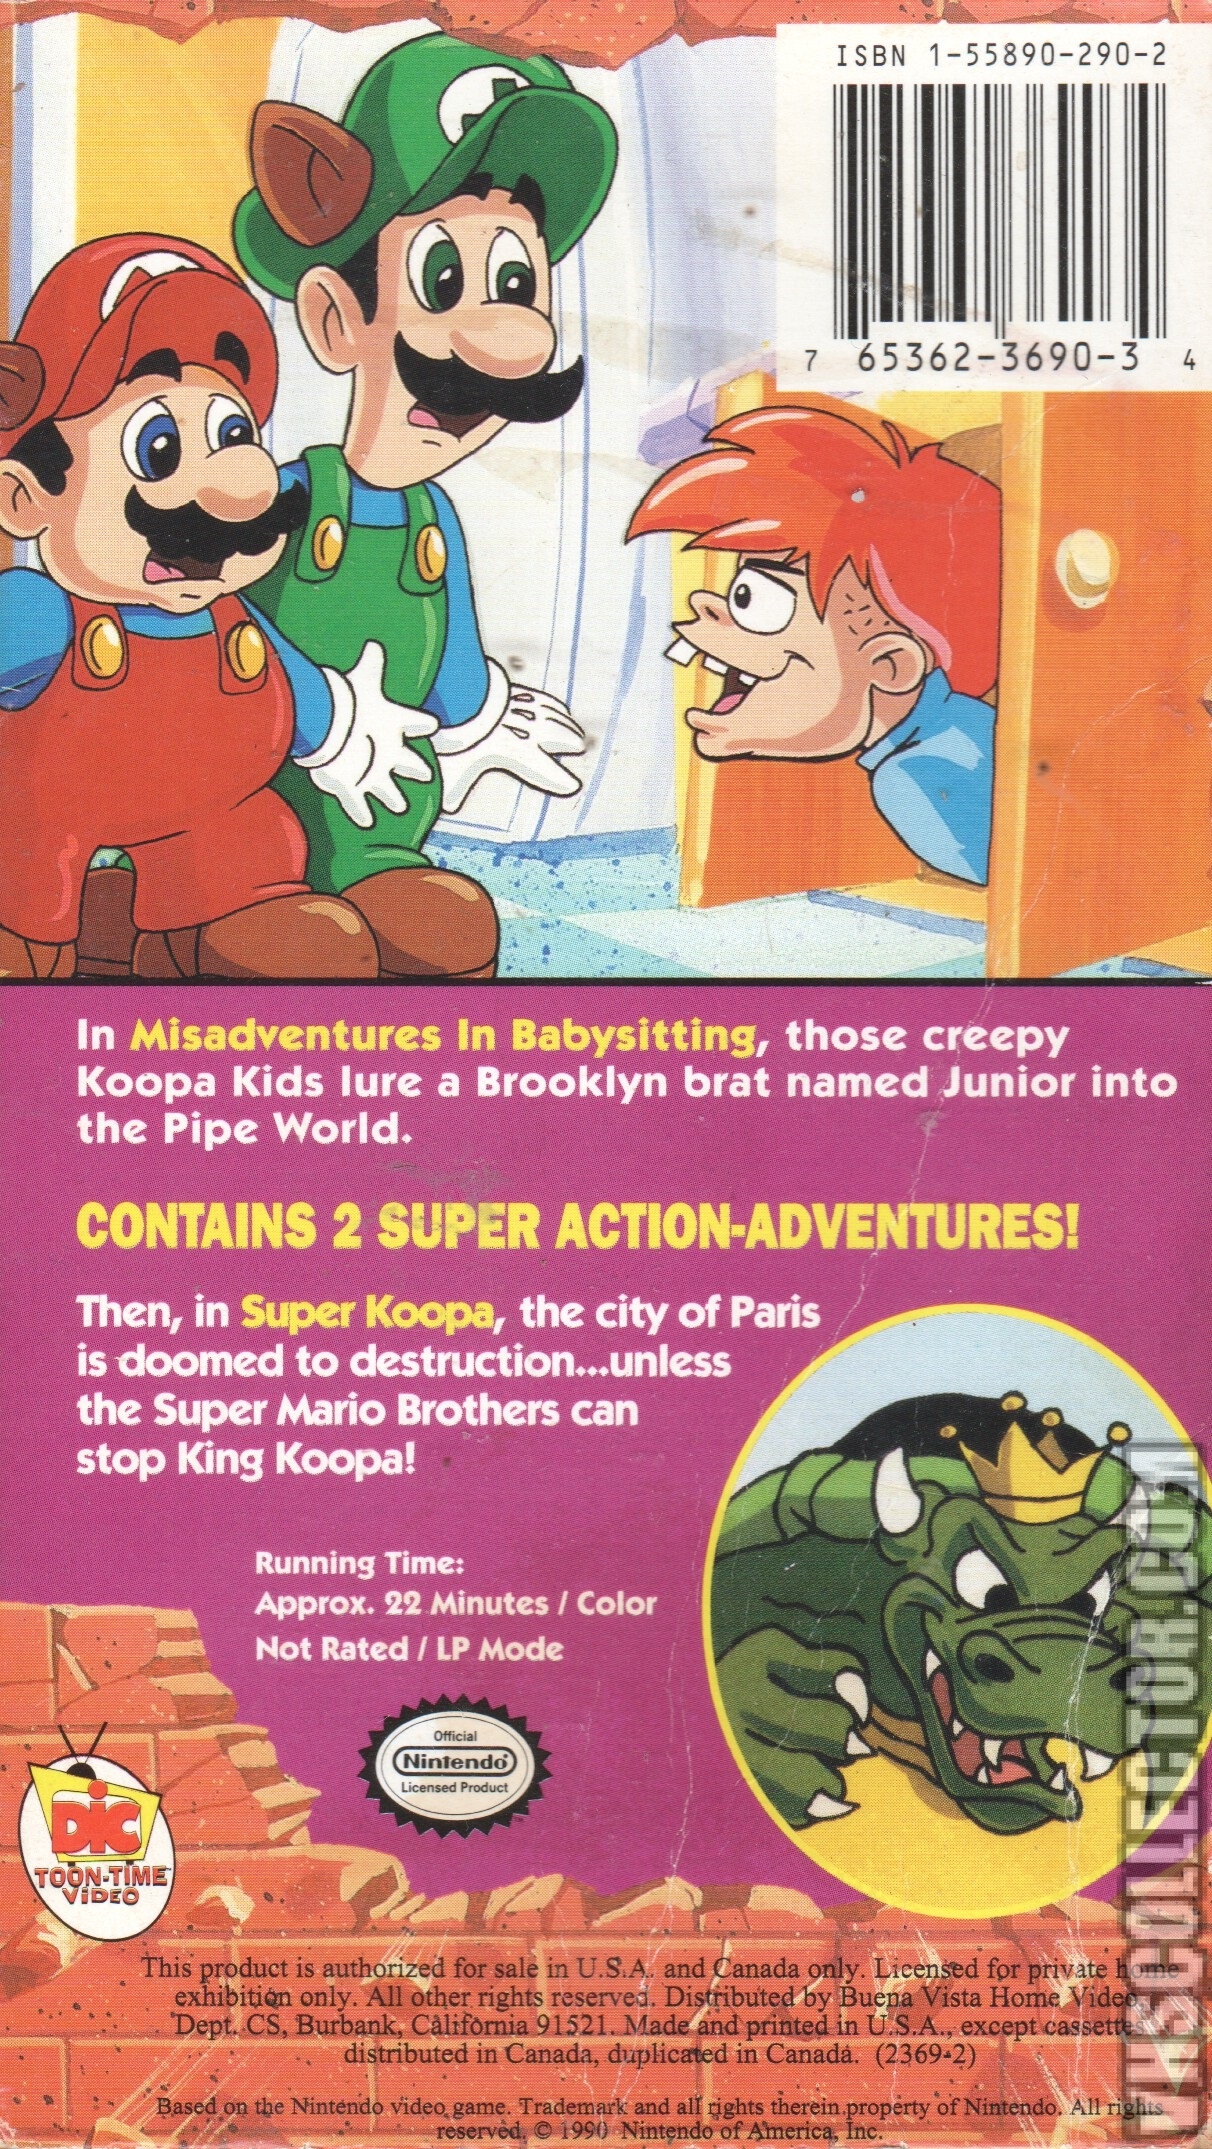 Mario bros special. The Adventures of super Mario Bros. 3. The Adventures of super Mario Bros. 3 DVD. Tue Adventures of super Mario Bros 3 DVD.